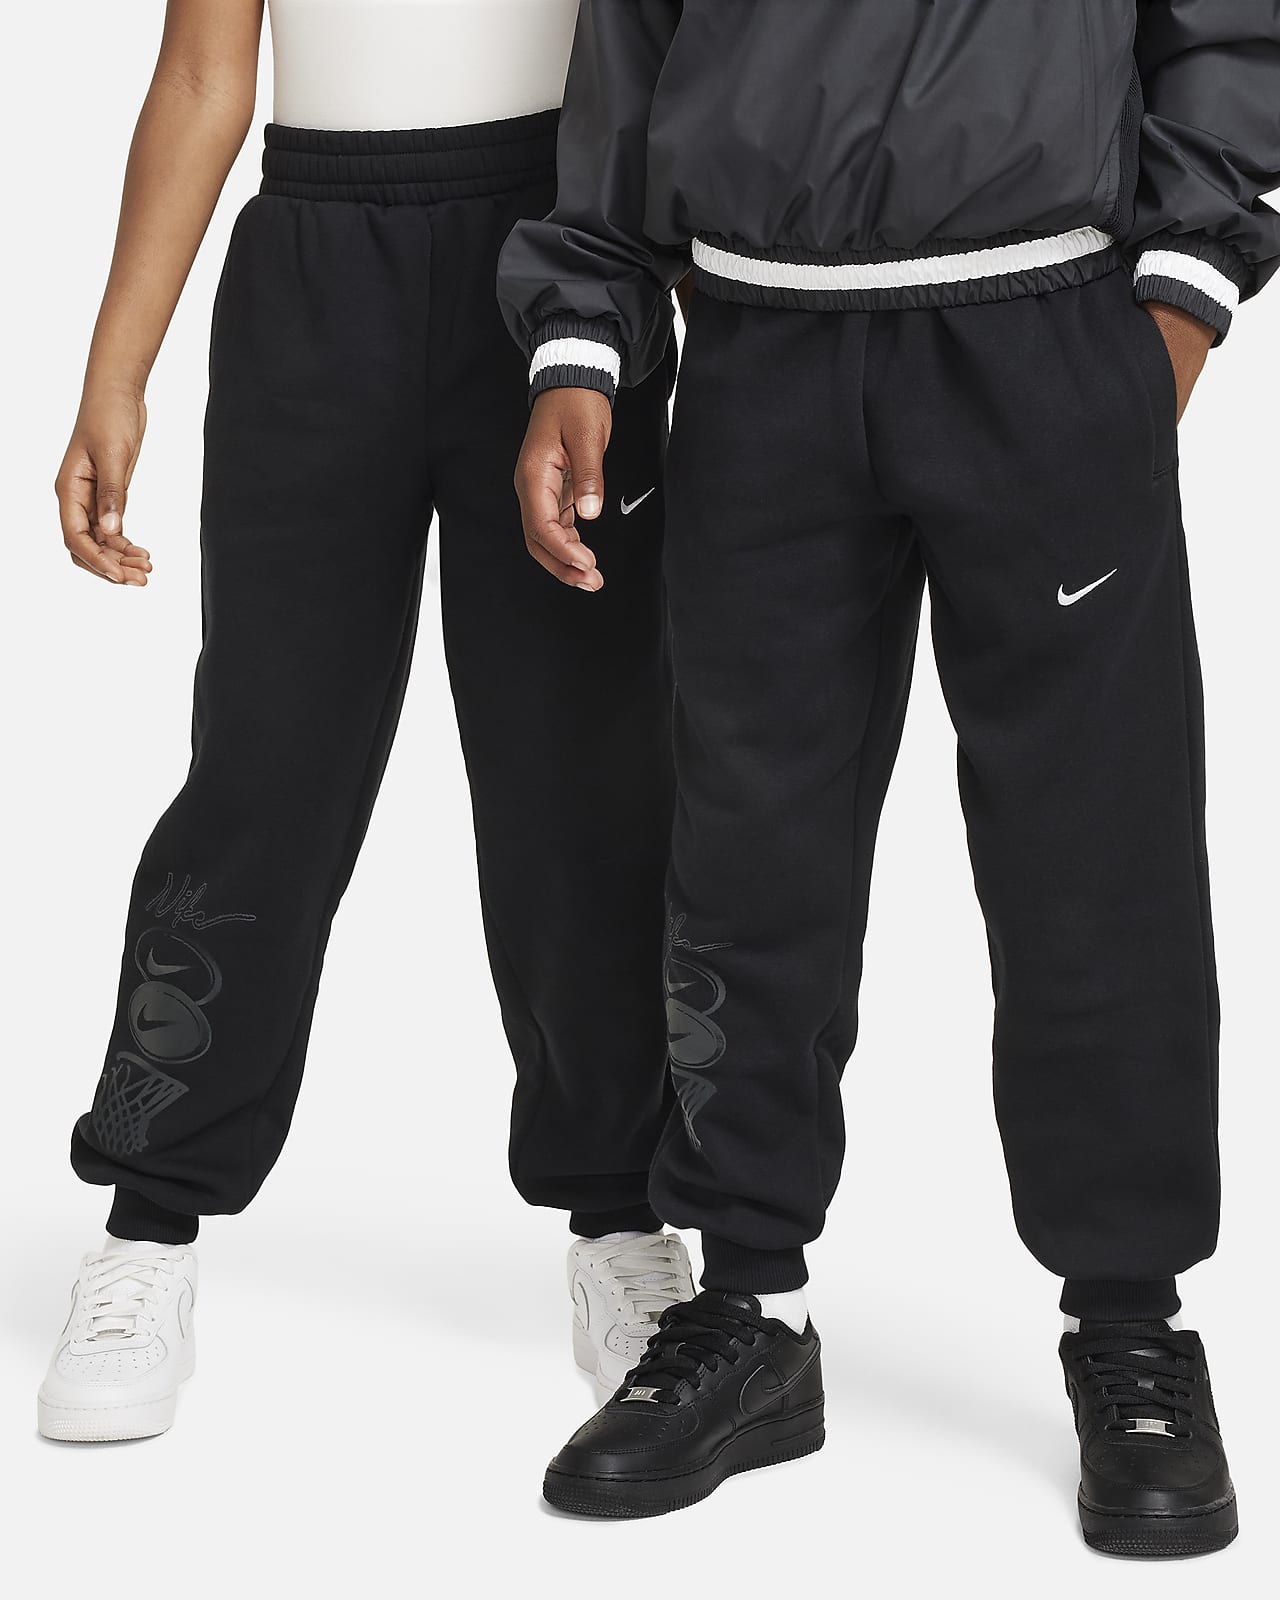 Nike Culture of Basketball Big Kids' Fleece Pants